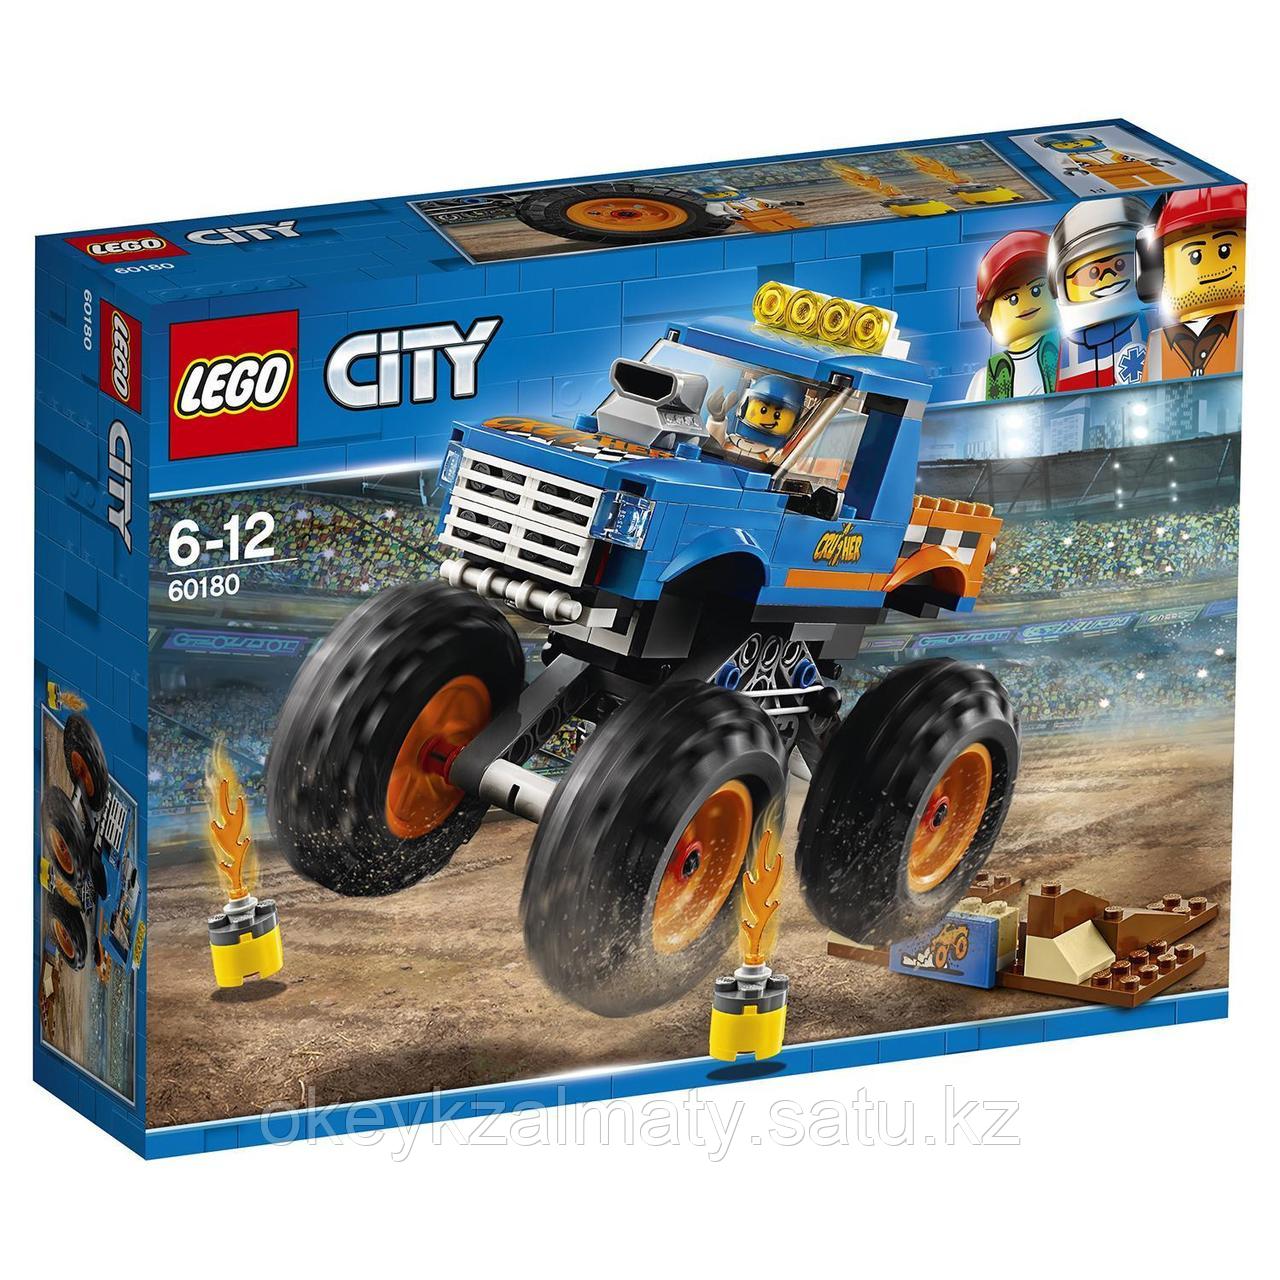 LEGO City: Монстр-трак 60180